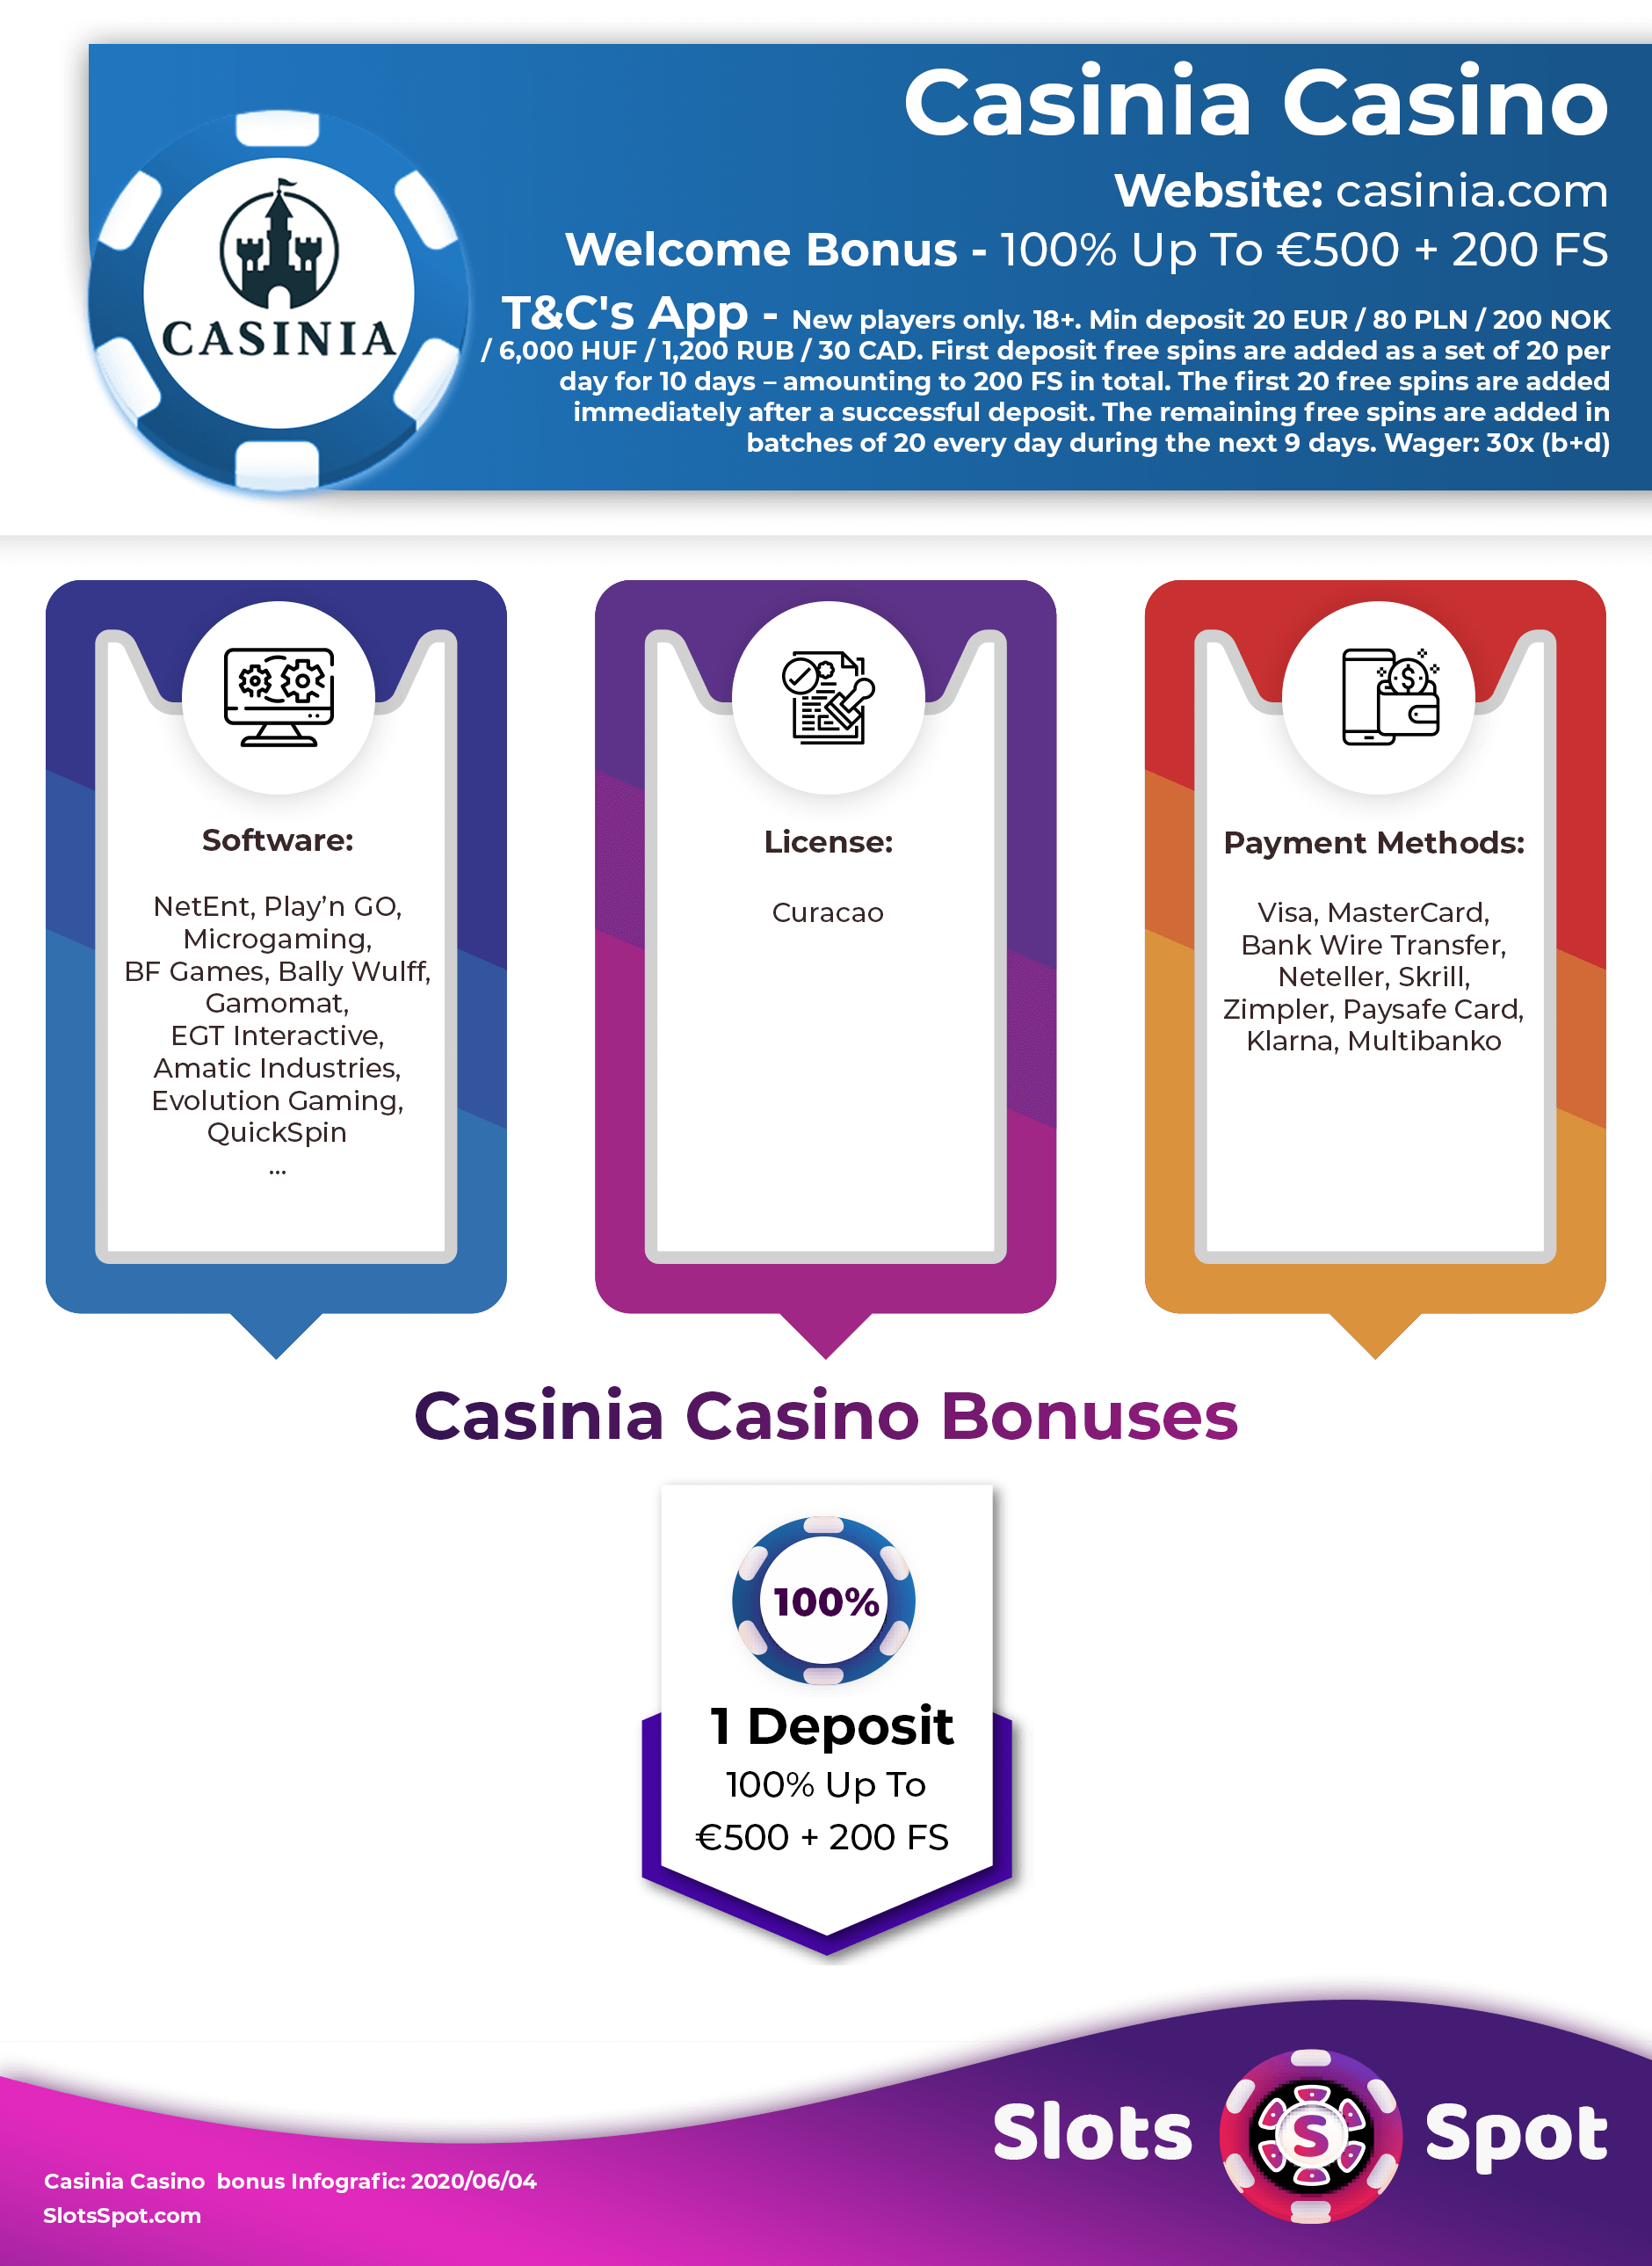 omnia casino no deposit bonus